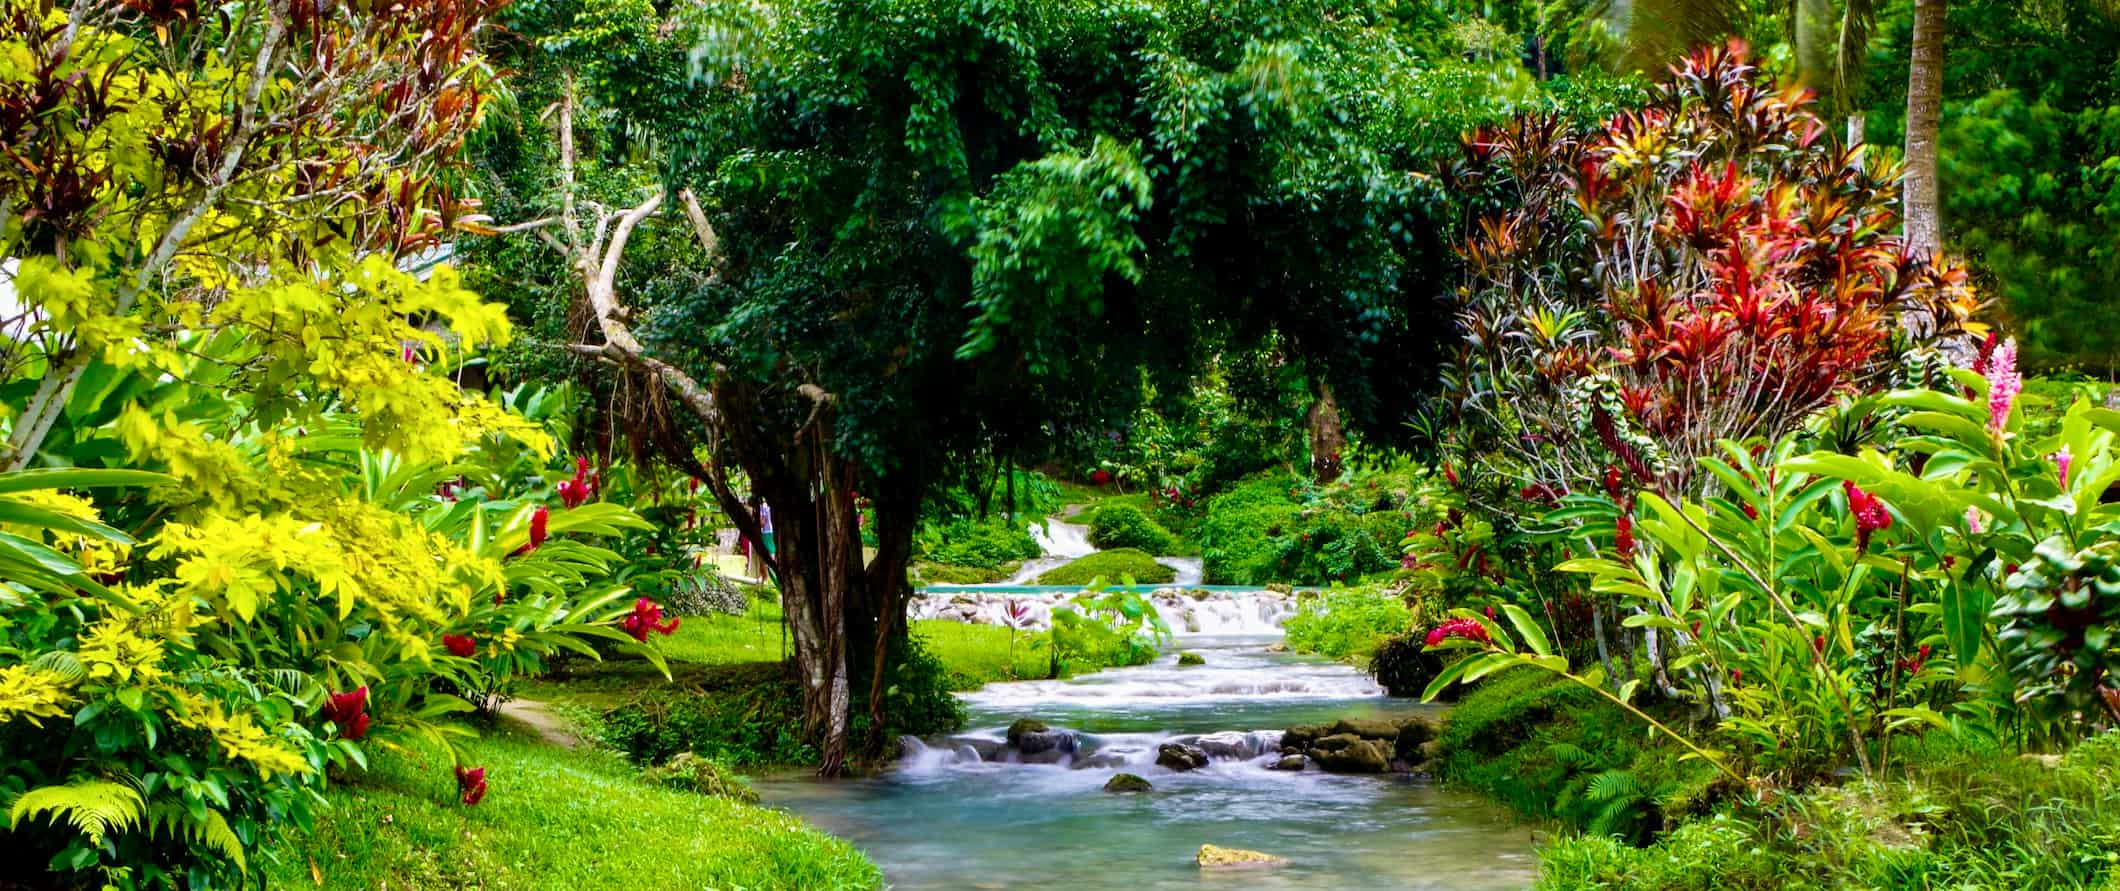 A lush jungle surrounding a small river in Vanuatu